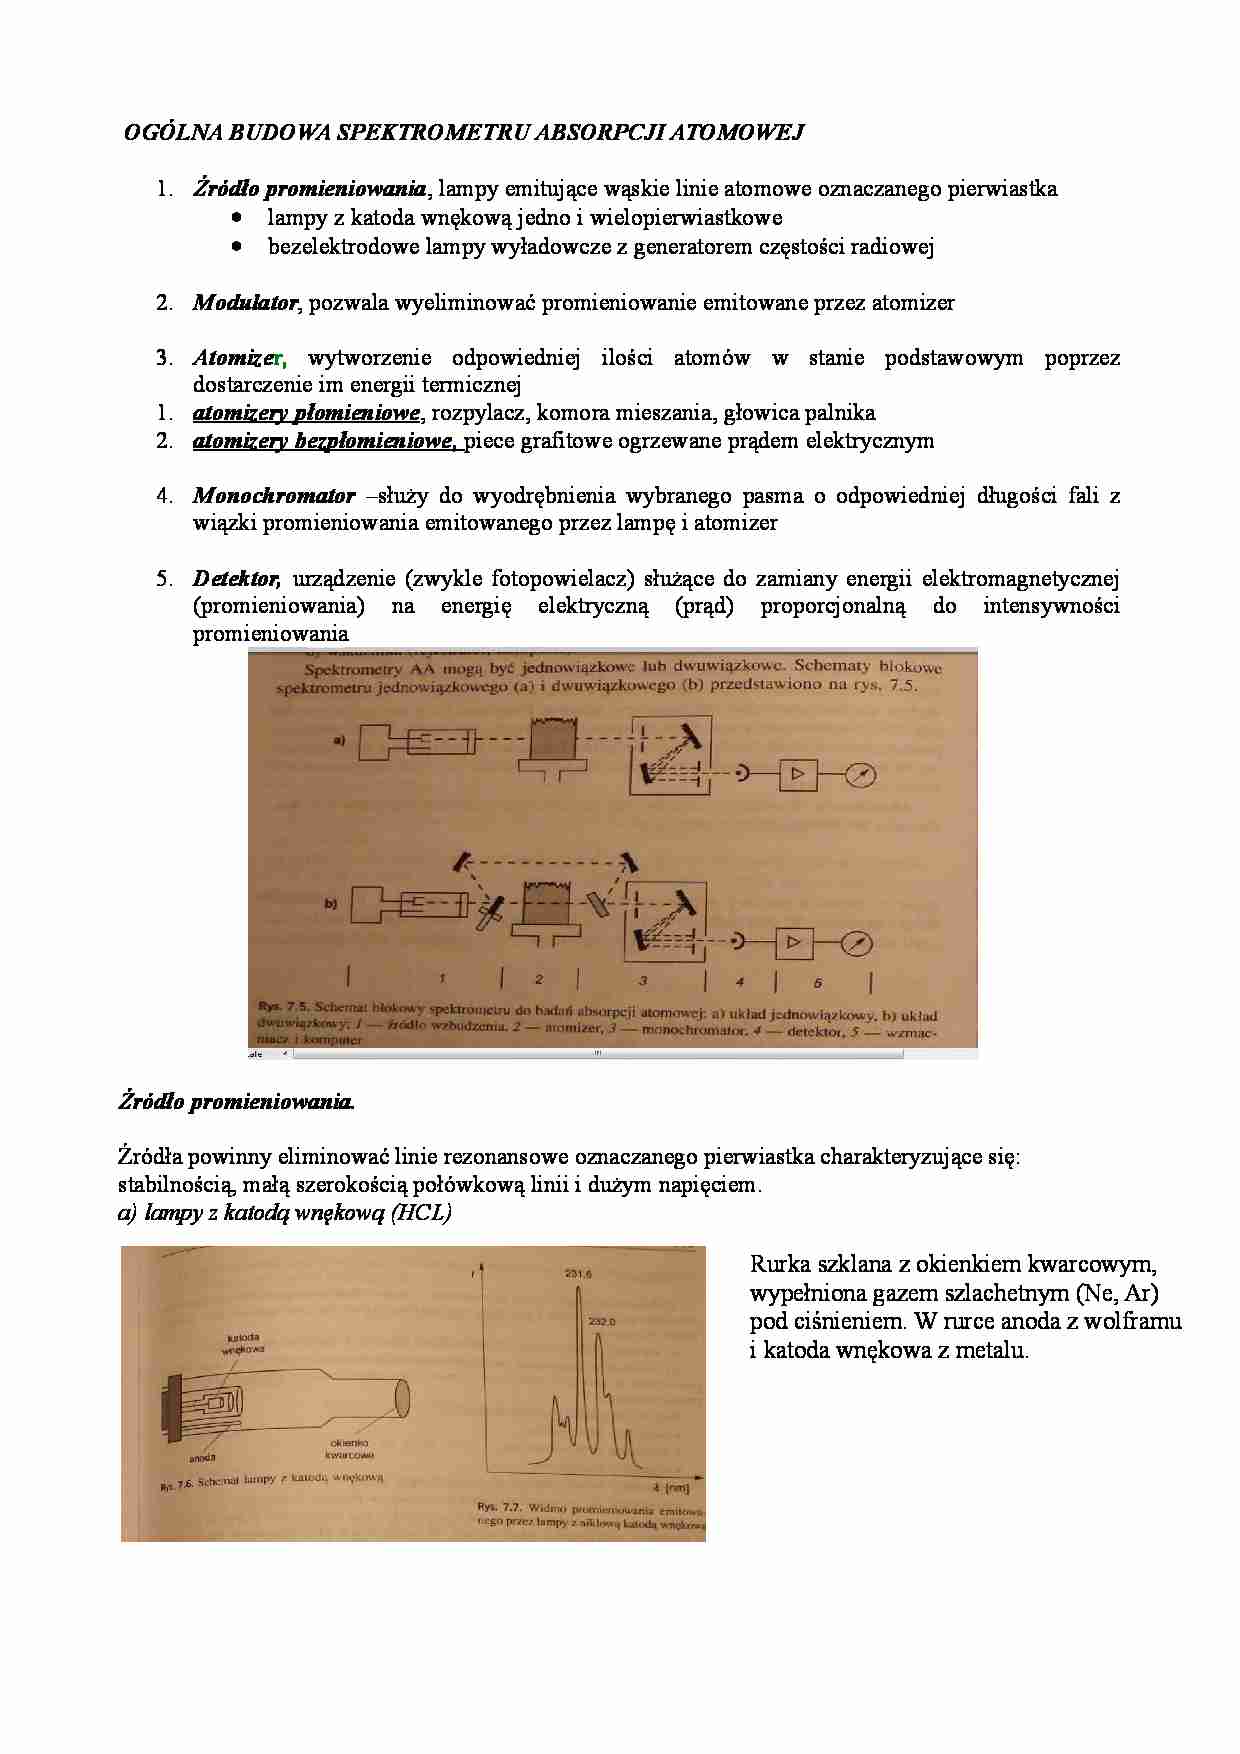 Budowa spektrometru absorpcji atomowej - strona 1